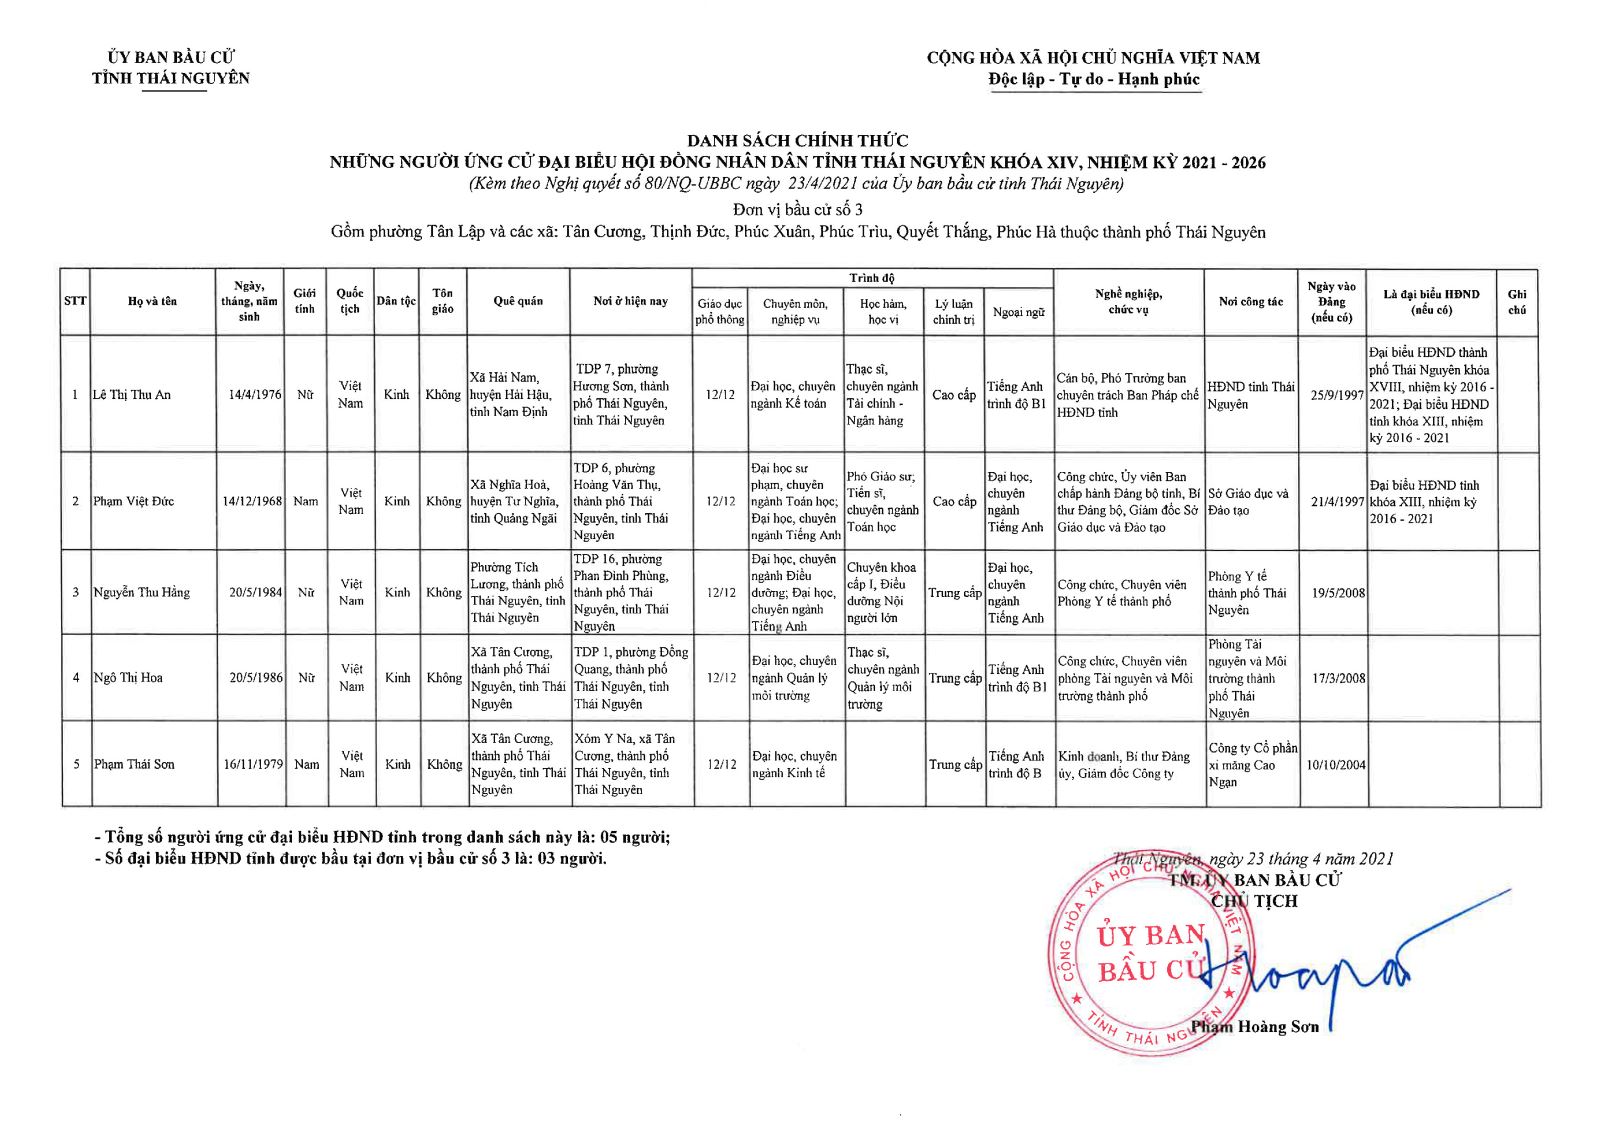 Danh sách chính thức những người ứng cử đại biểu Hội đồng nhân dân tỉnh Thái Nguyên khóa XIV, nhiệm kỳ 2021 - 2026 -2